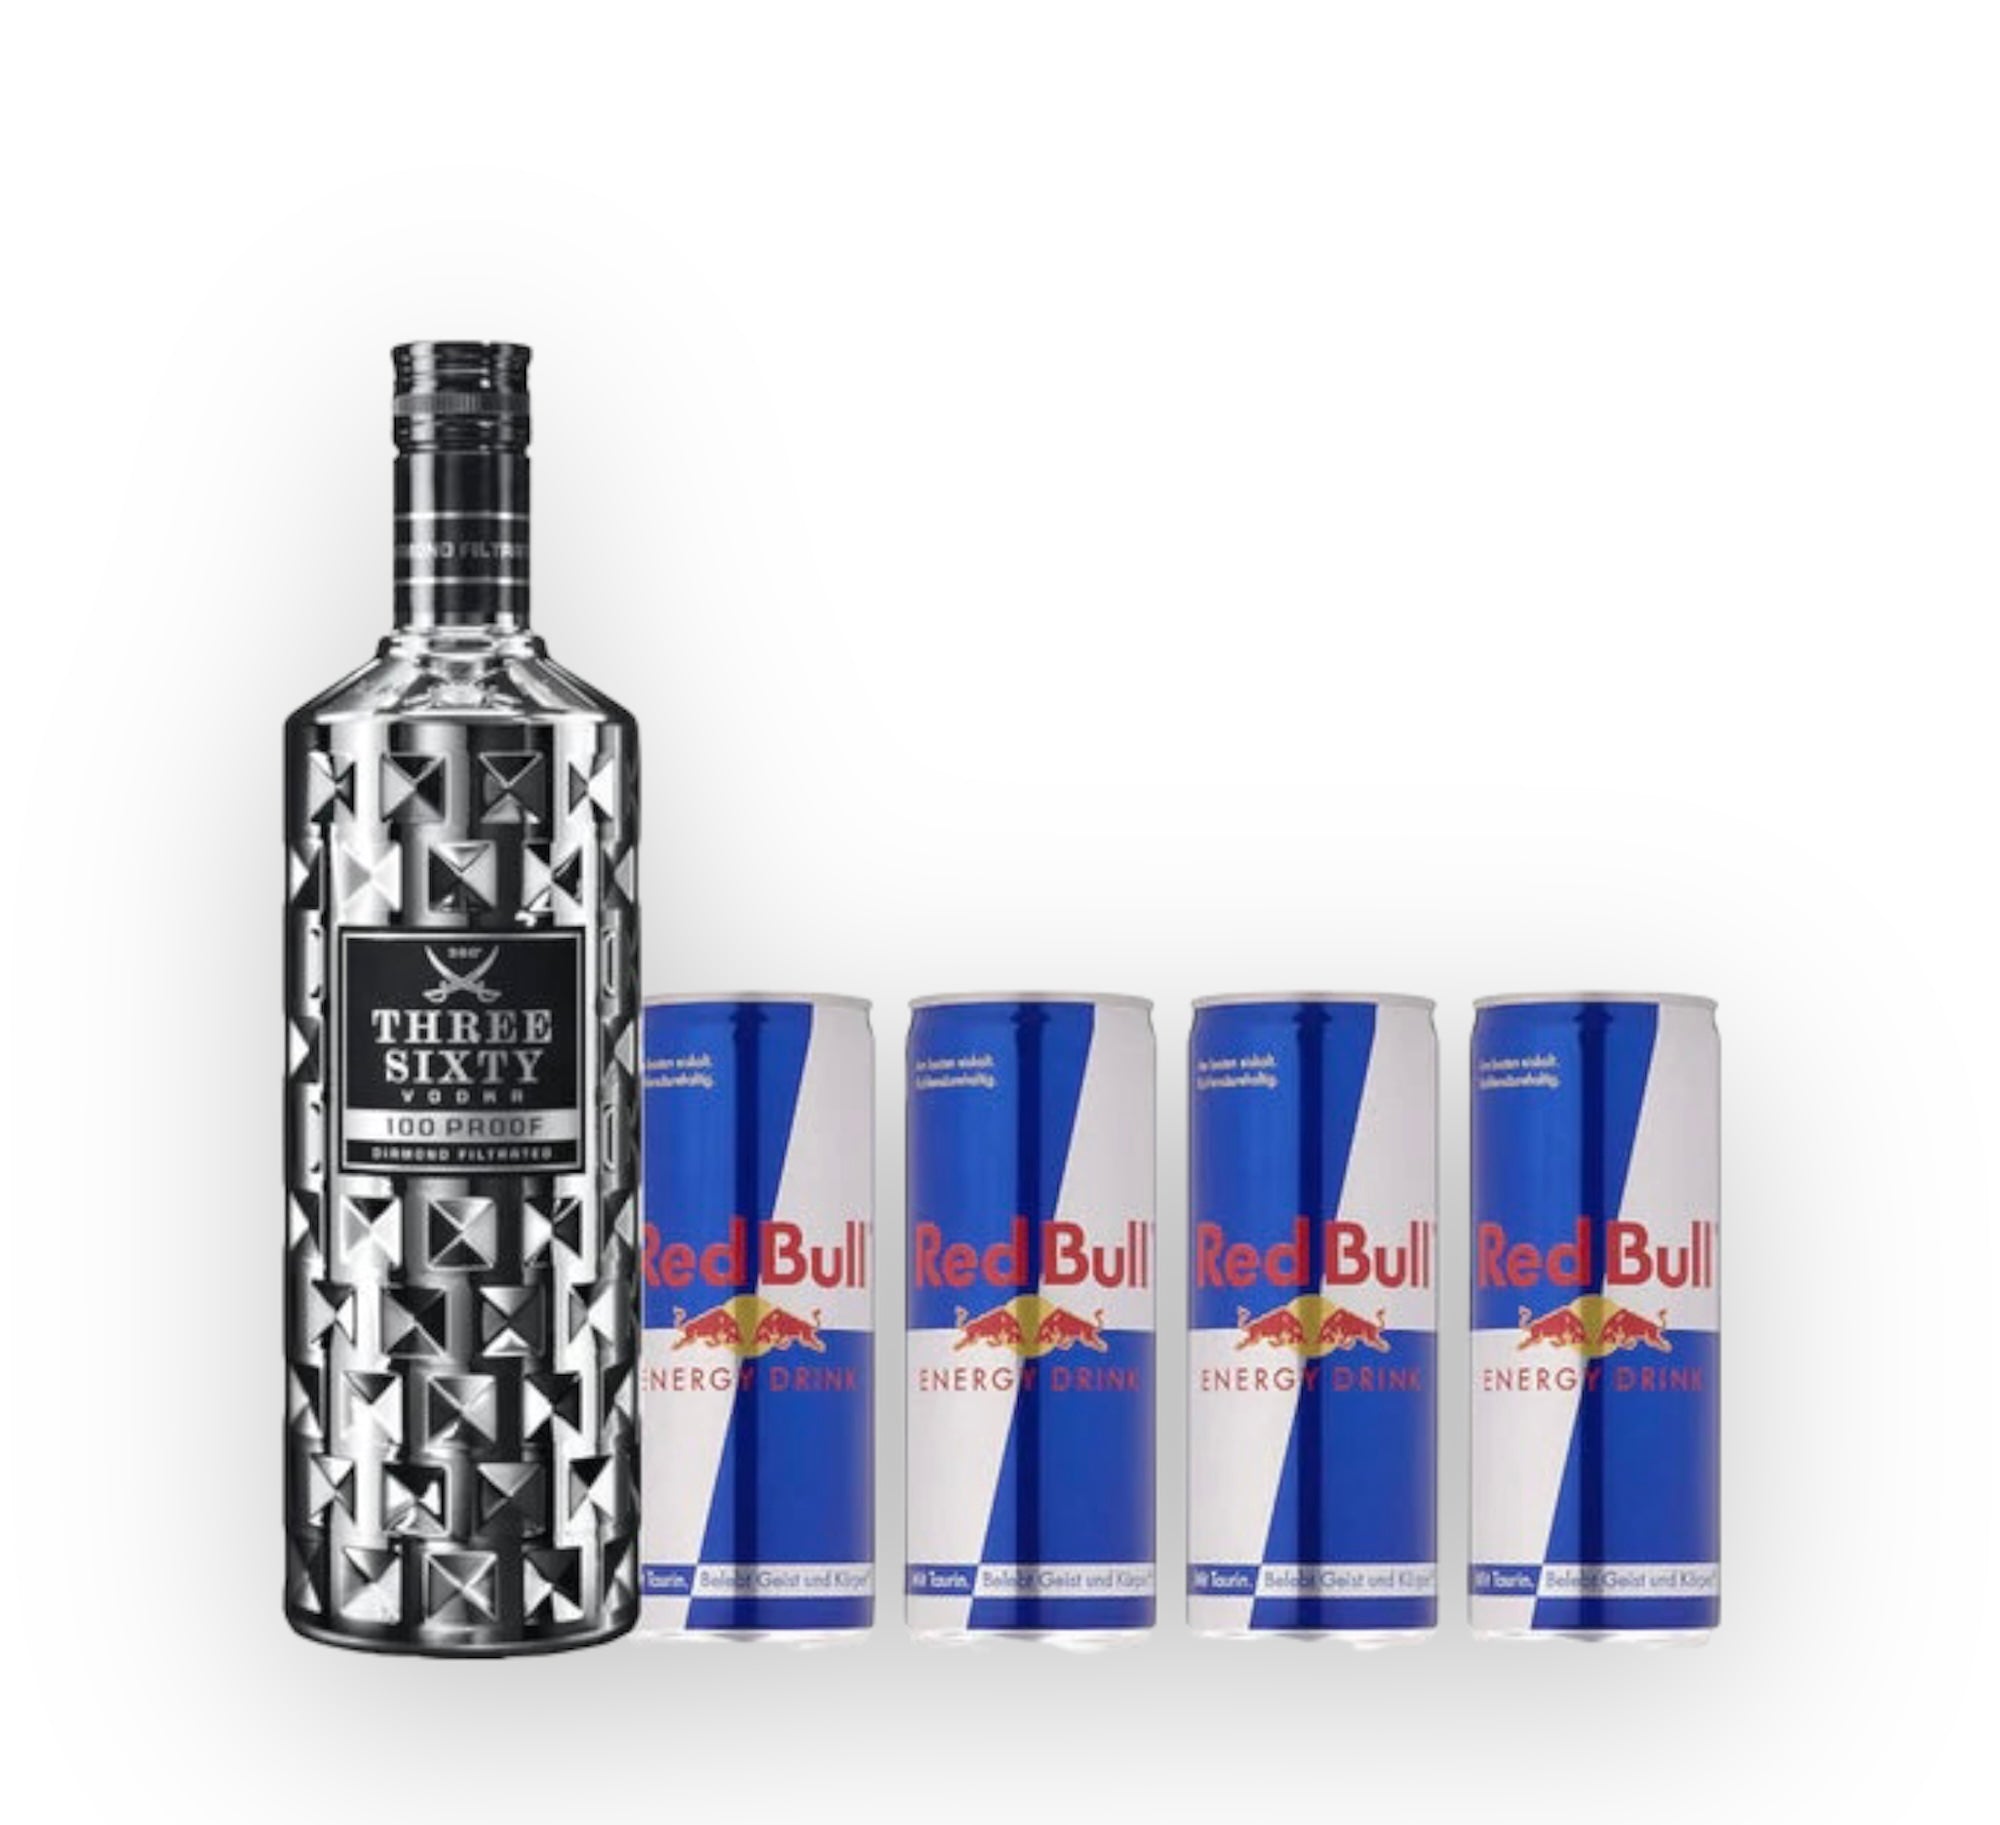 Three Sixty Vodka 0,7l + 4 x Red Bull 0,25l